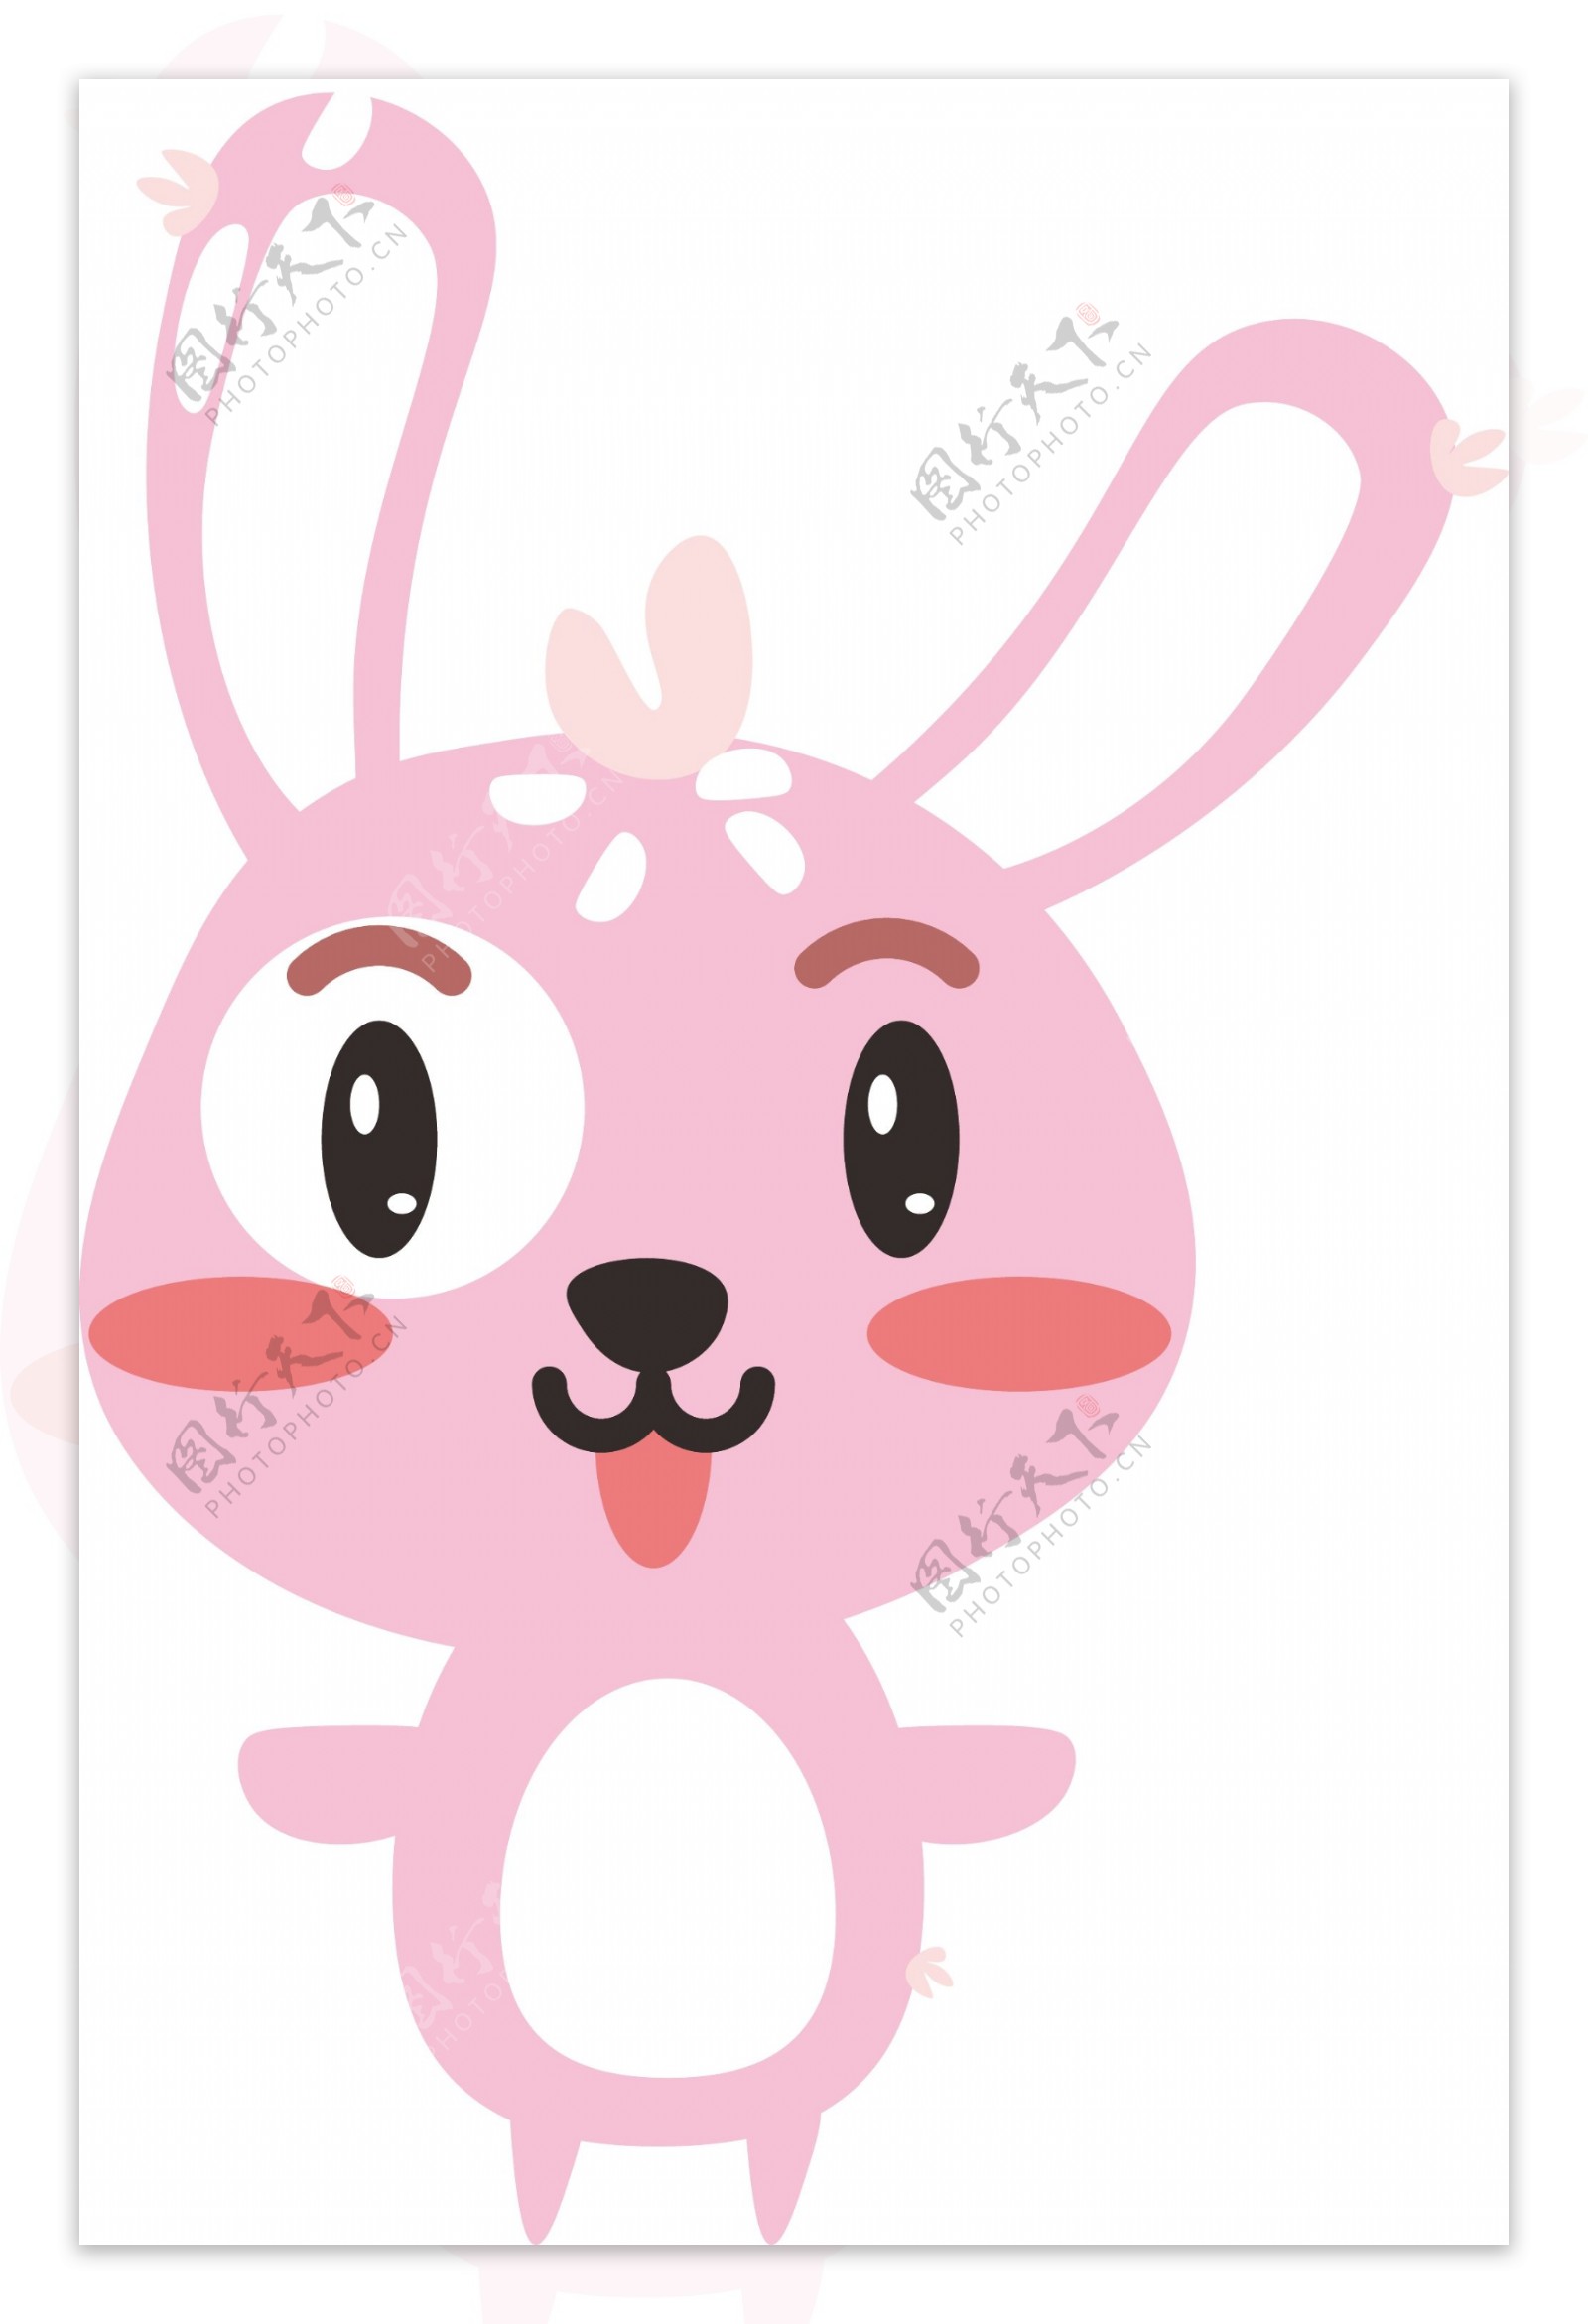 超萌可爱卡通兔子苹果手机壁纸第3页_高清手机壁纸图片大全-精品壁纸站